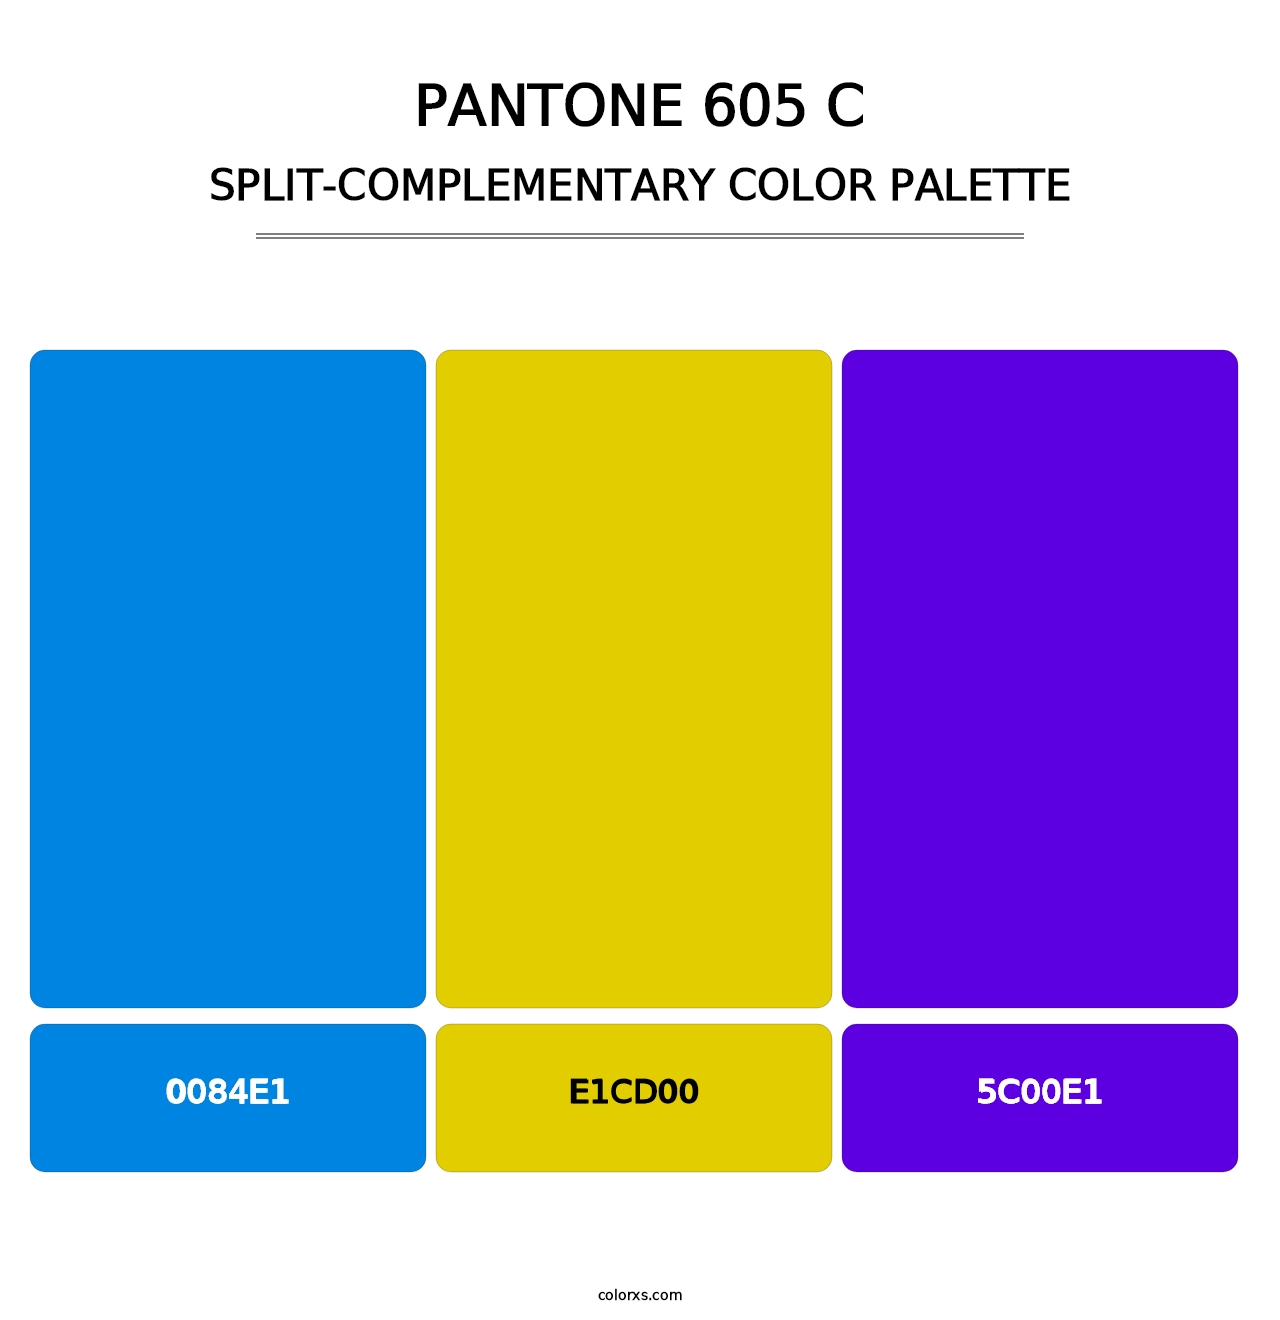 PANTONE 605 C - Split-Complementary Color Palette